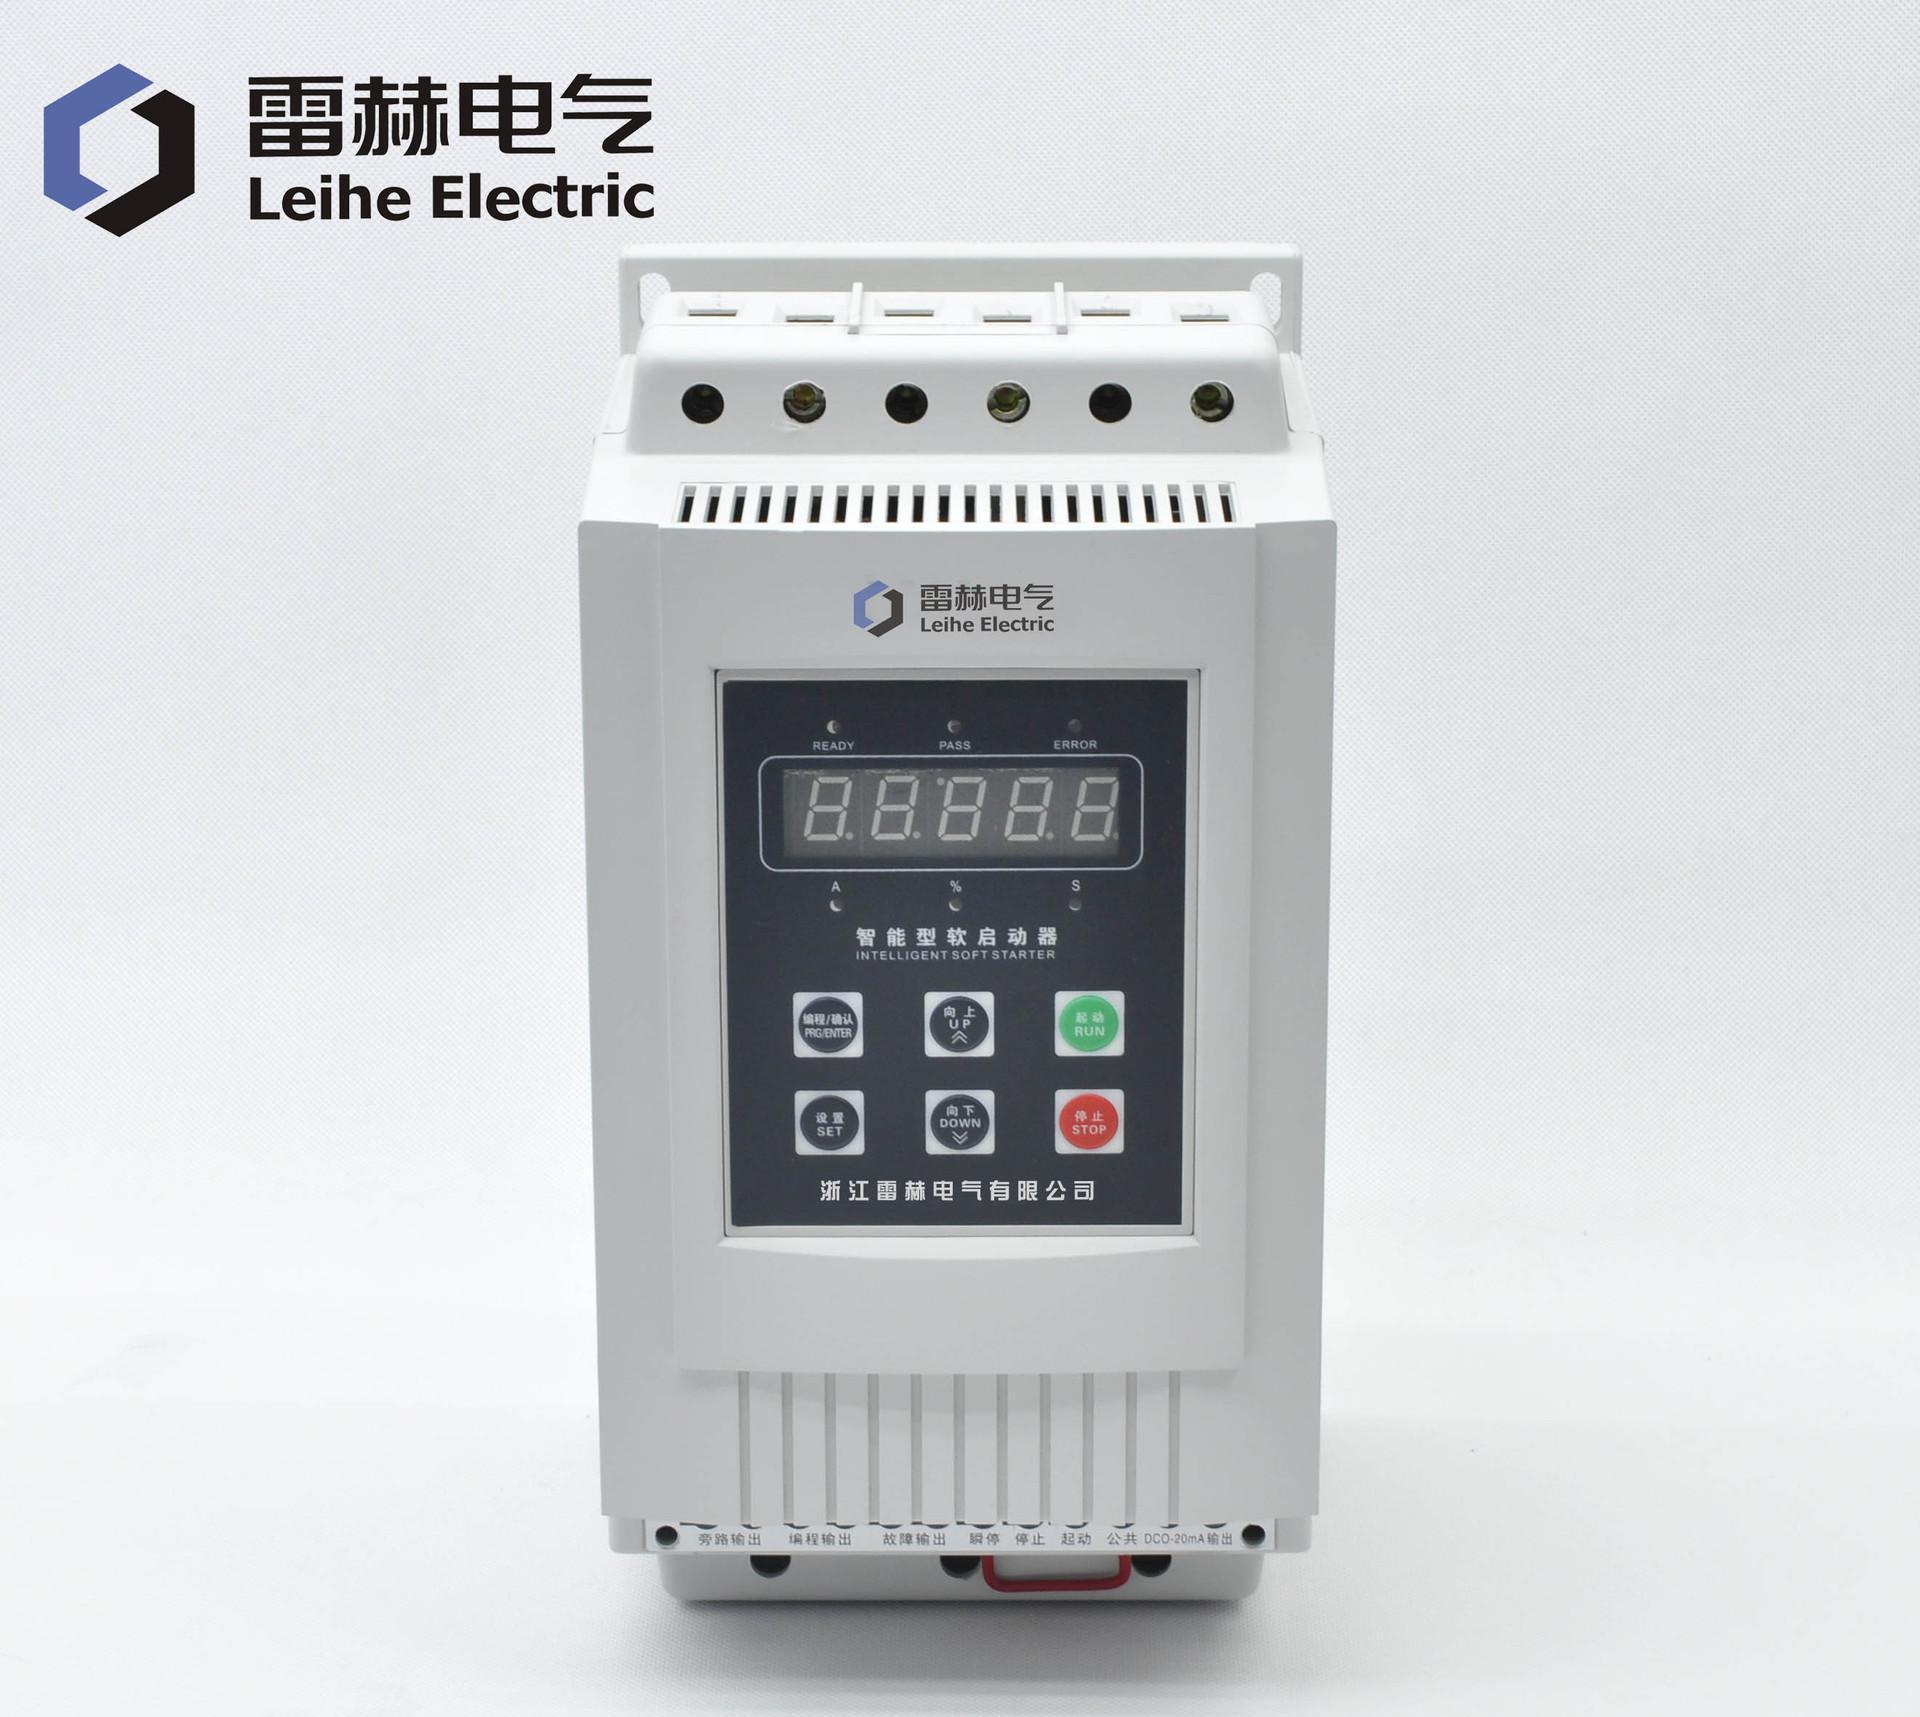 浙江雷赫电气特价直销电机软启动器18.5kw智能数显软启动器/柜